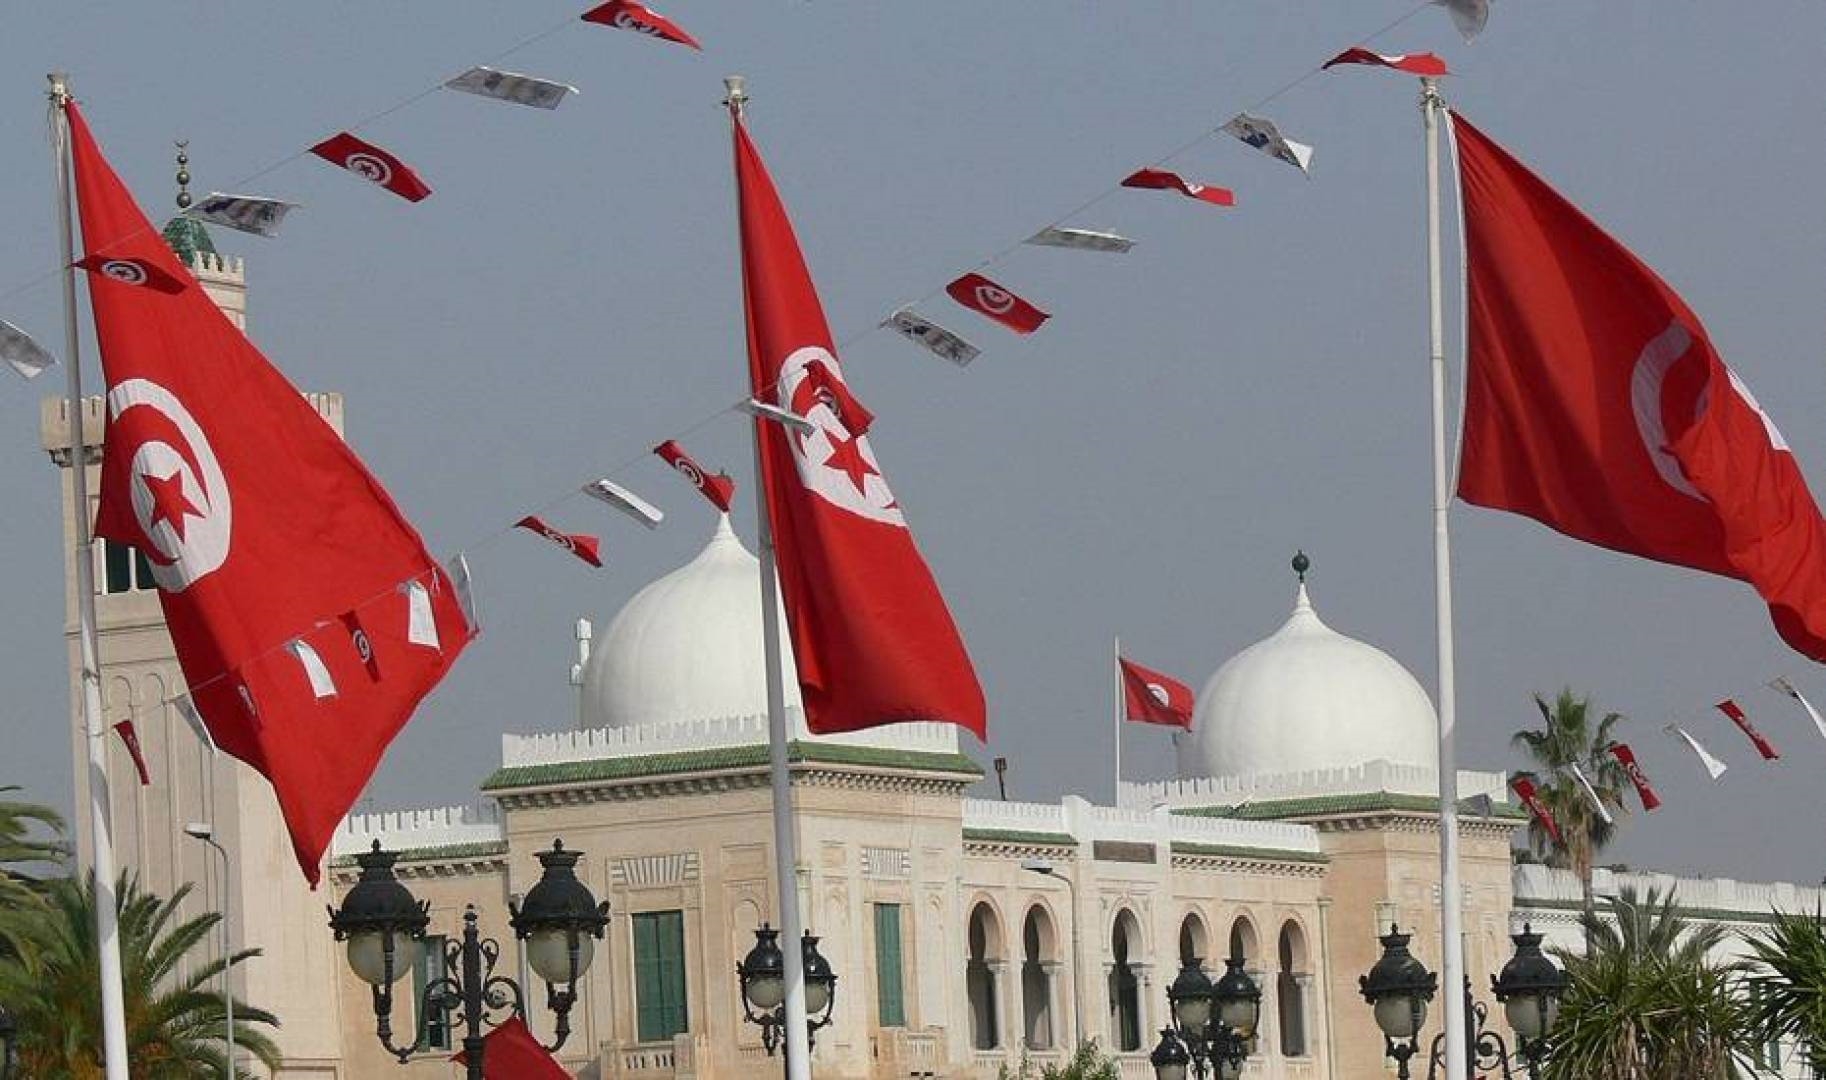 أزمة التحوير الوزاري في تونس وتصادم المشروعيّات: بين القانوني والأخلاقي، يبقى هامش للسياسة